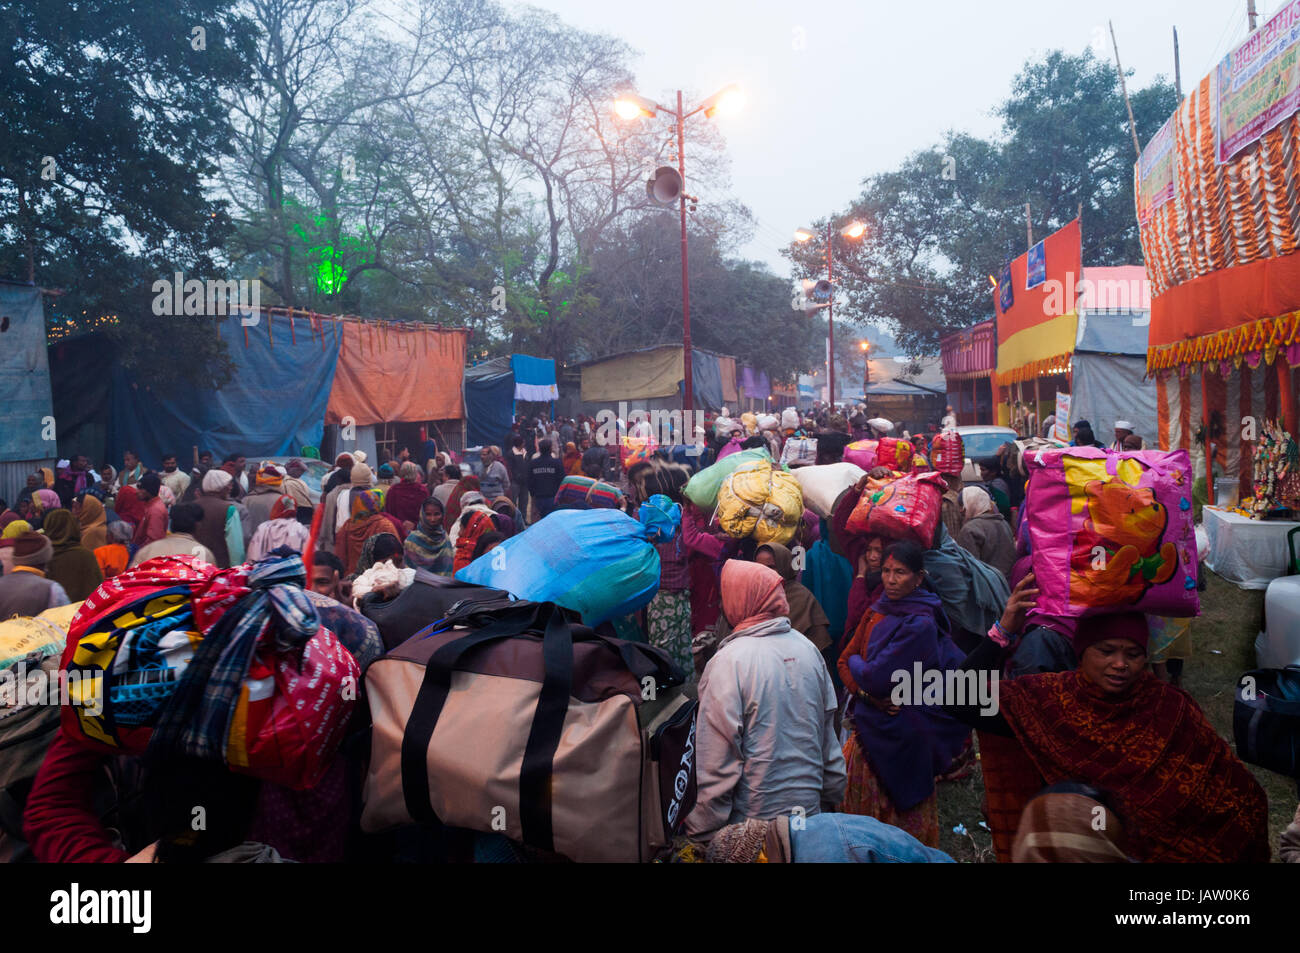 BABUGHAT, Kolkata, WEST BENGAL / INDE - 9ème Janvier 2013 : passionnés d'Hindu le 9 janvier 2013, en camp de transit Babughat, Kolkata. Ils sont sur leur chemin à Gangasagar (Sagar) . Banque D'Images